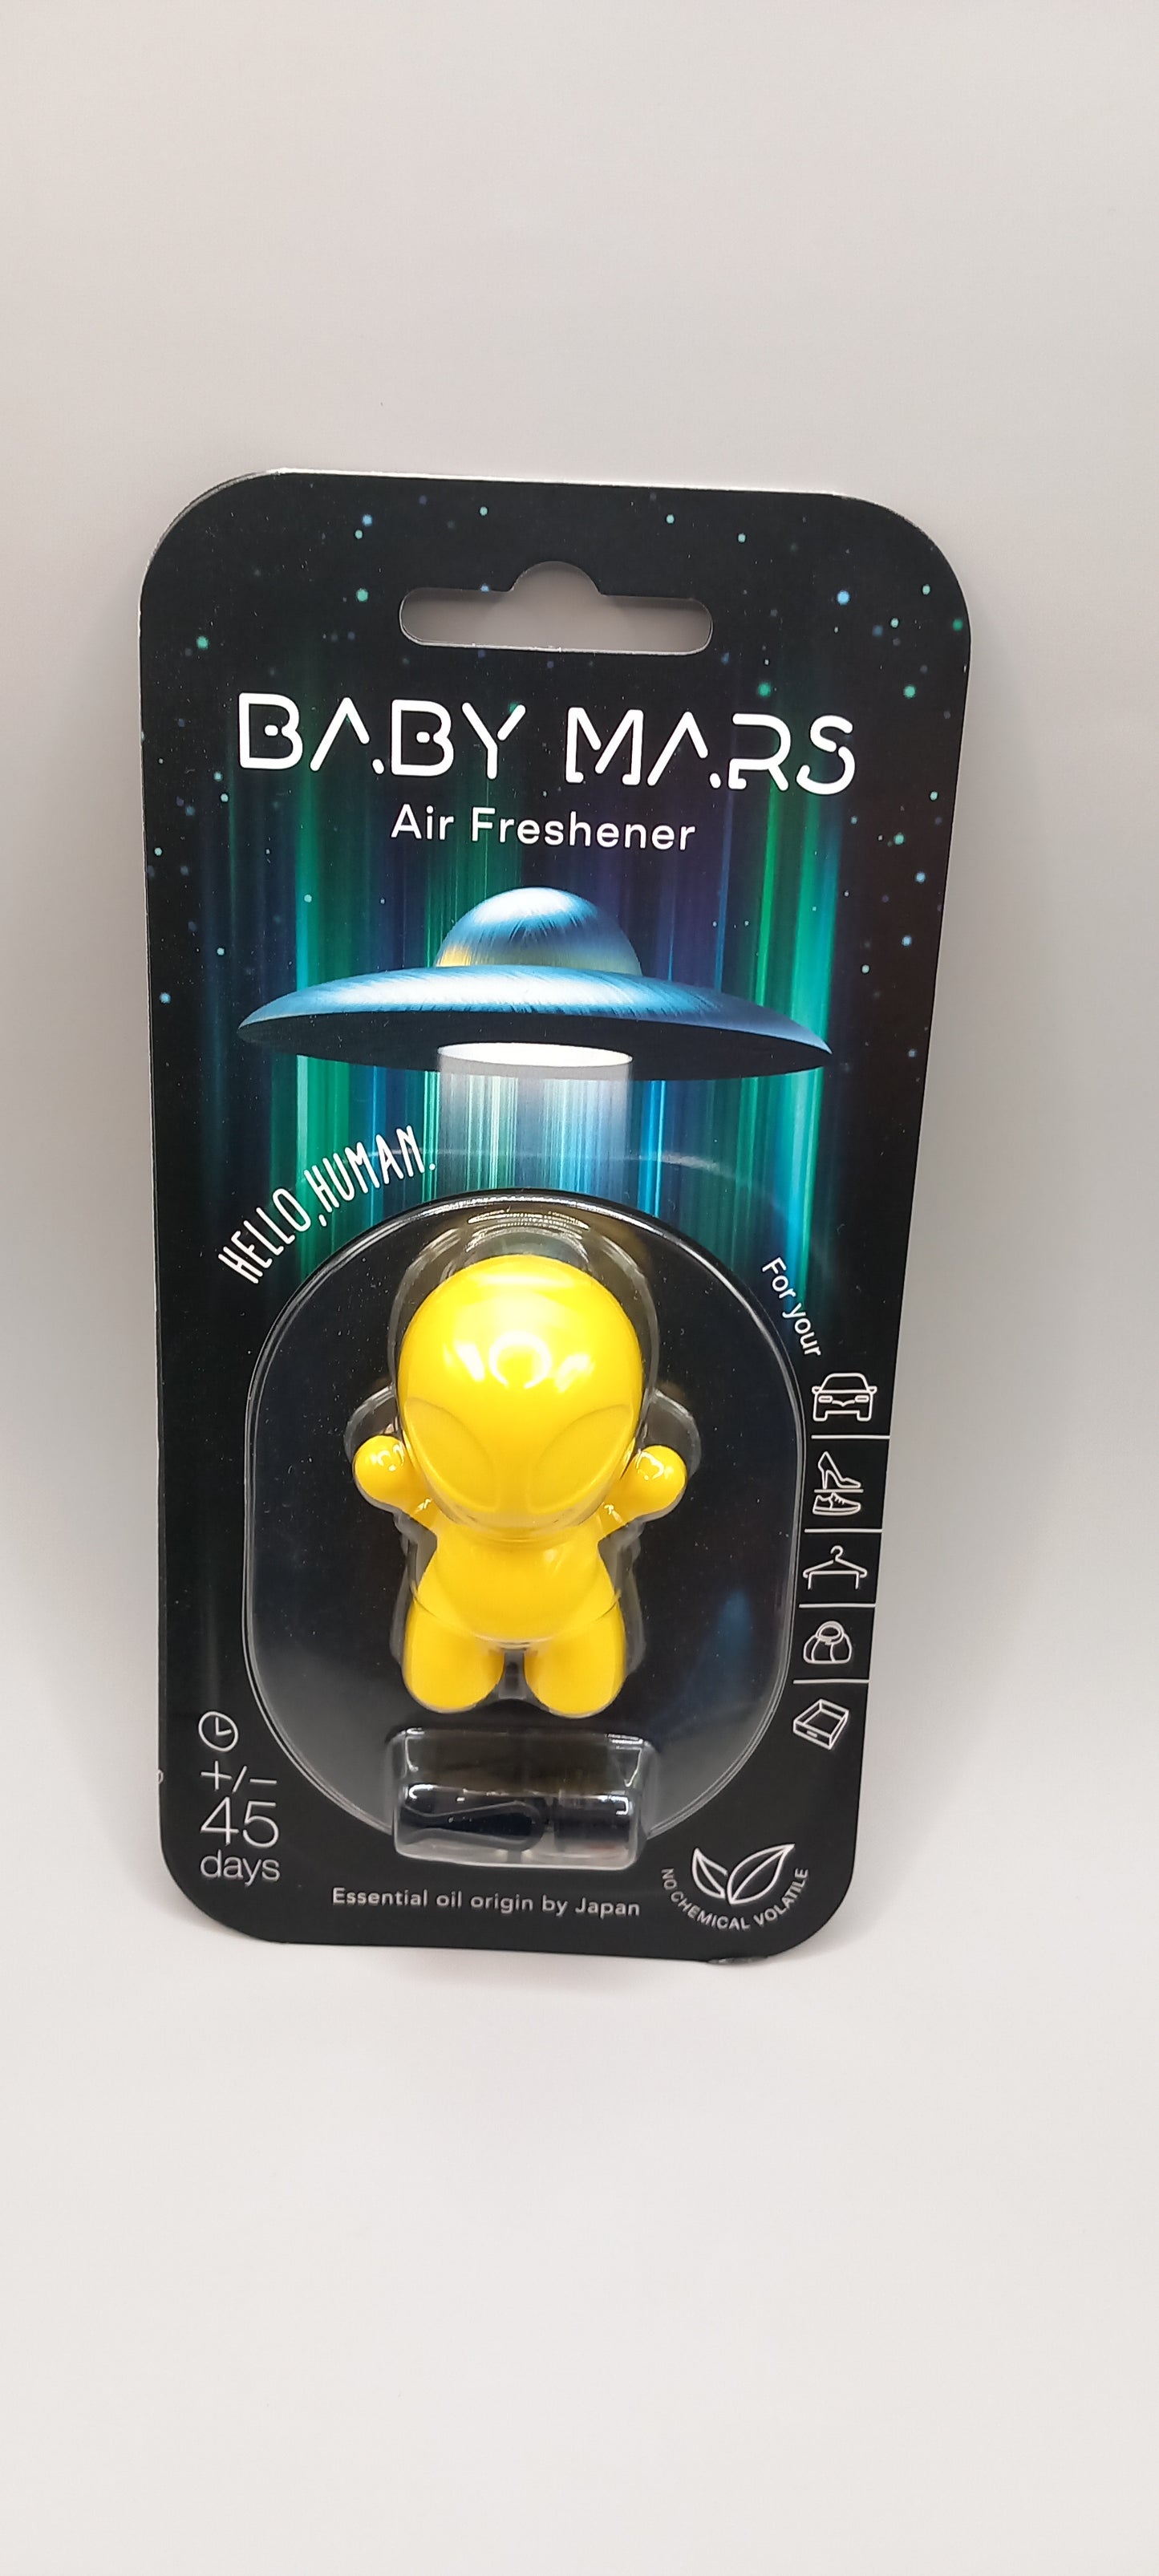 Baby Mars "NOUVEAUTE"